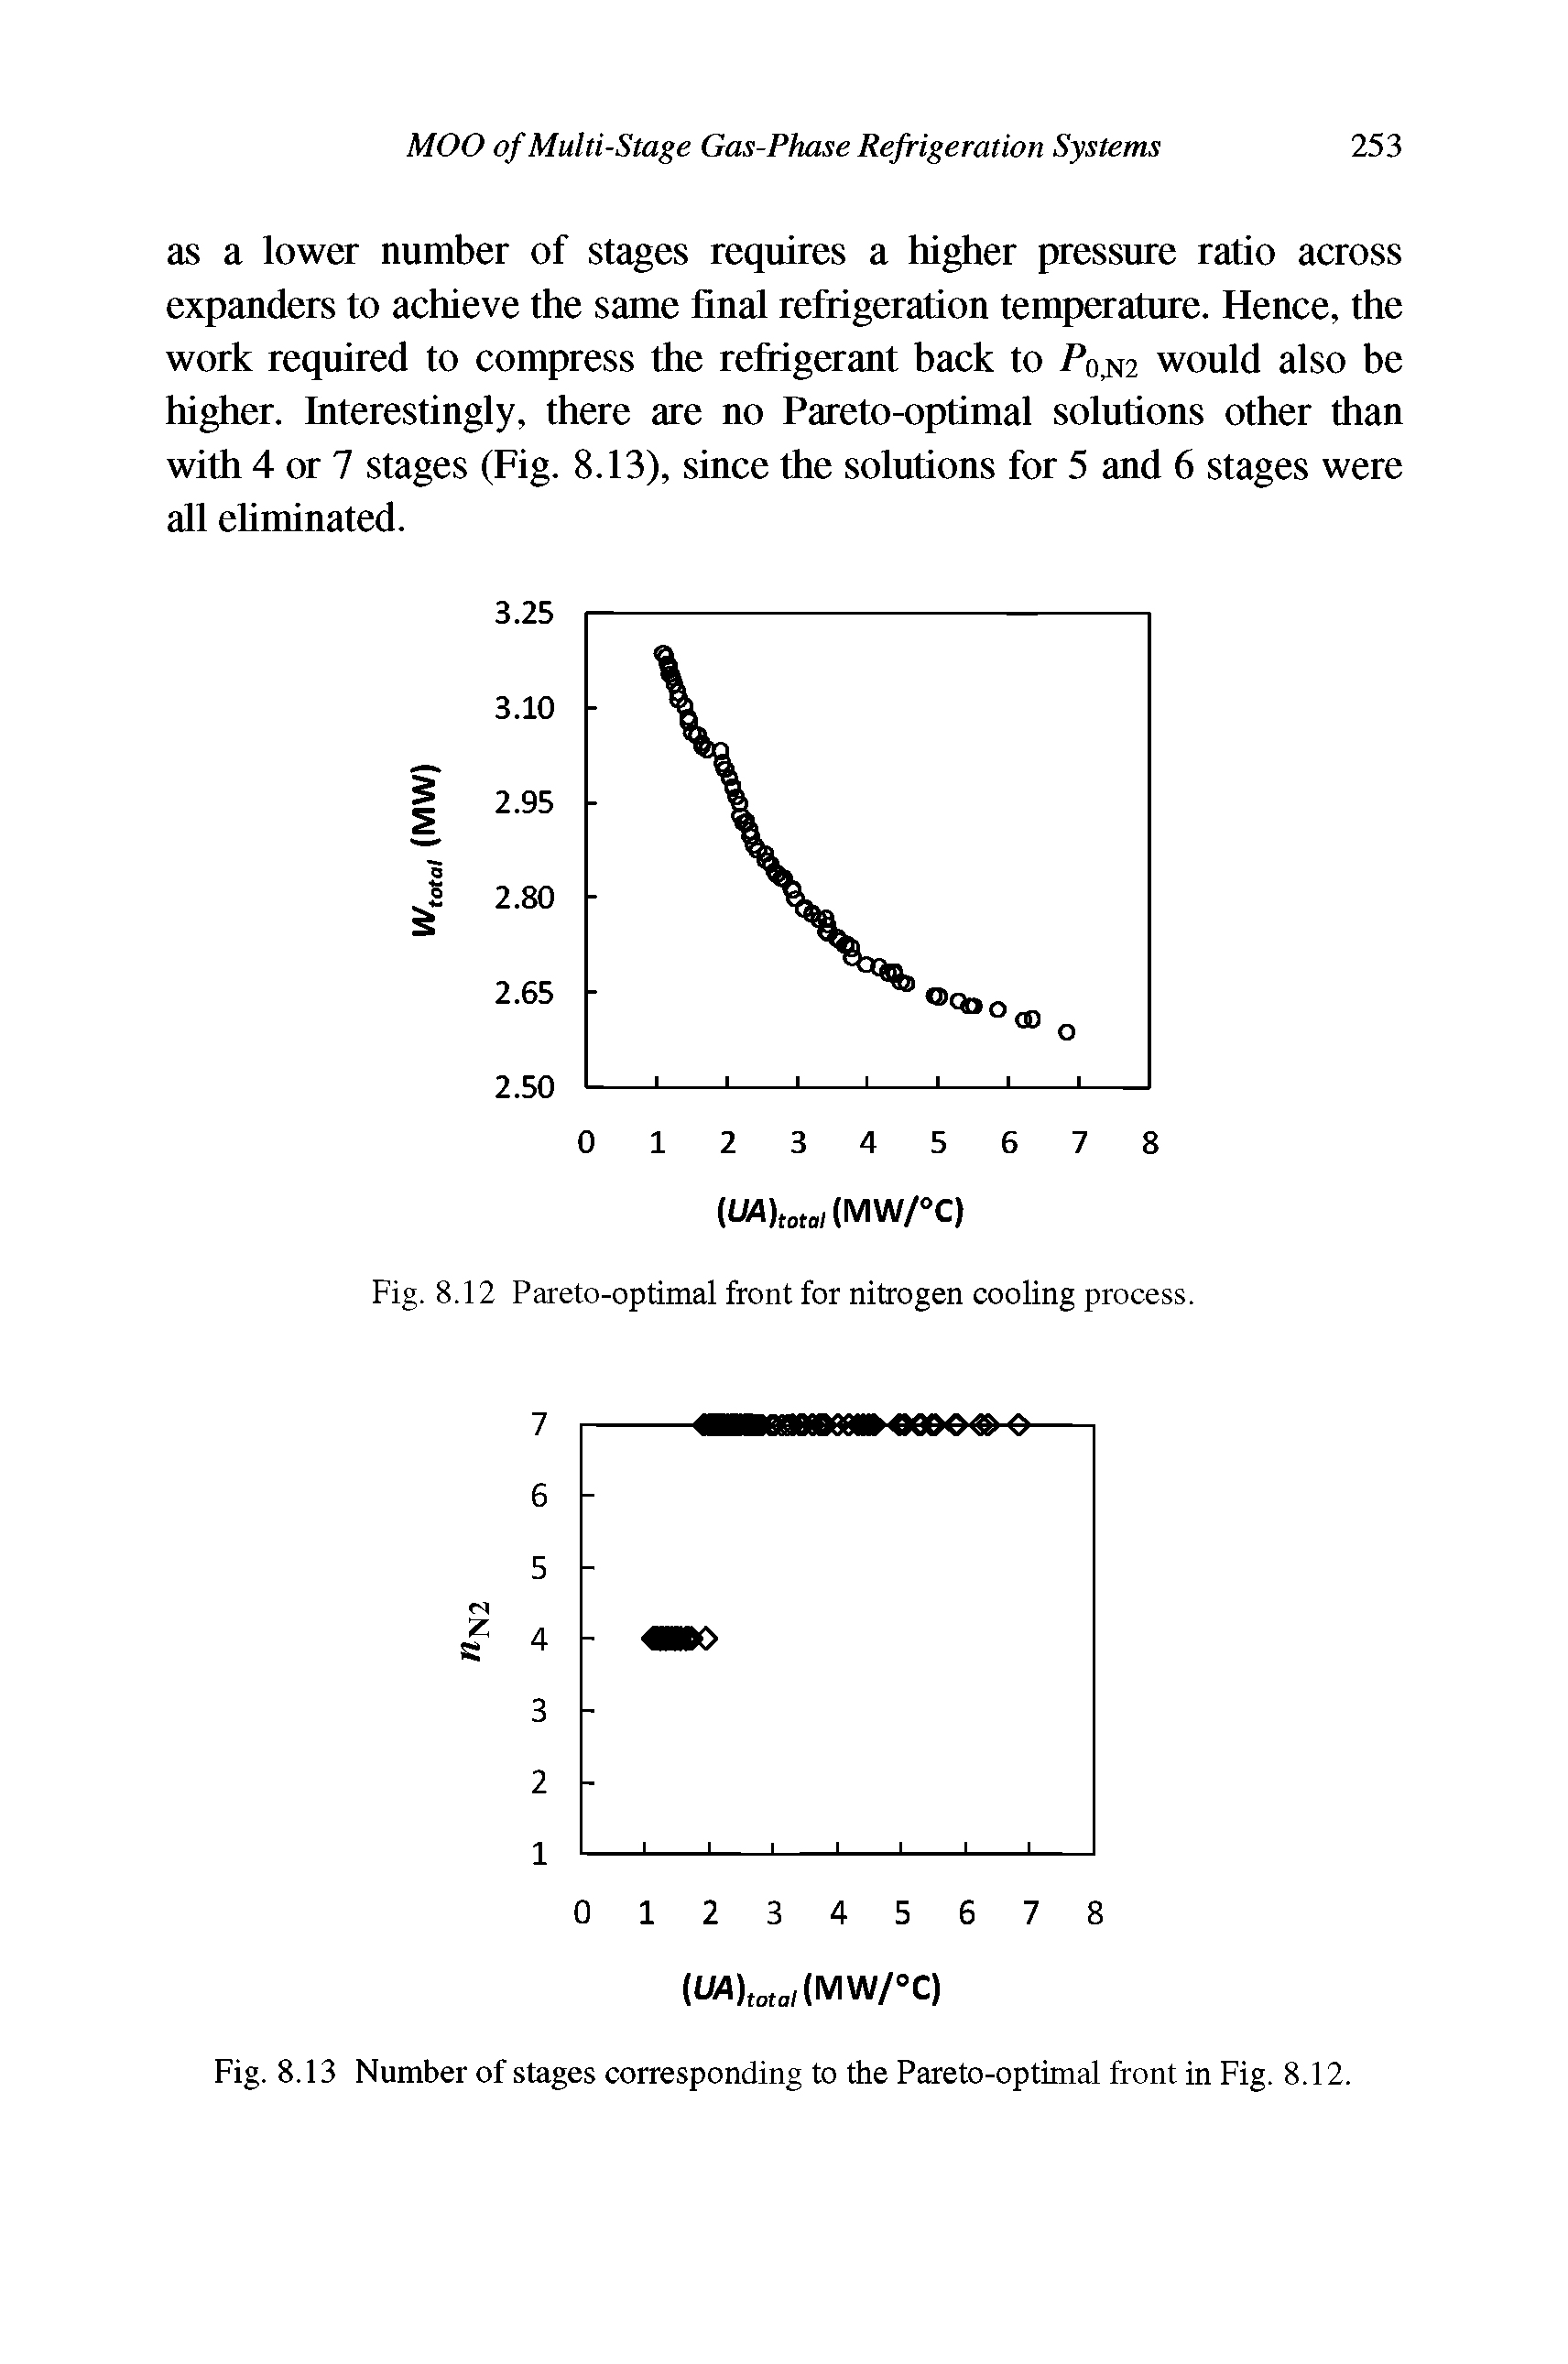 Fig. 8.12 Pareto-optimal front for nitrogen cooling process.